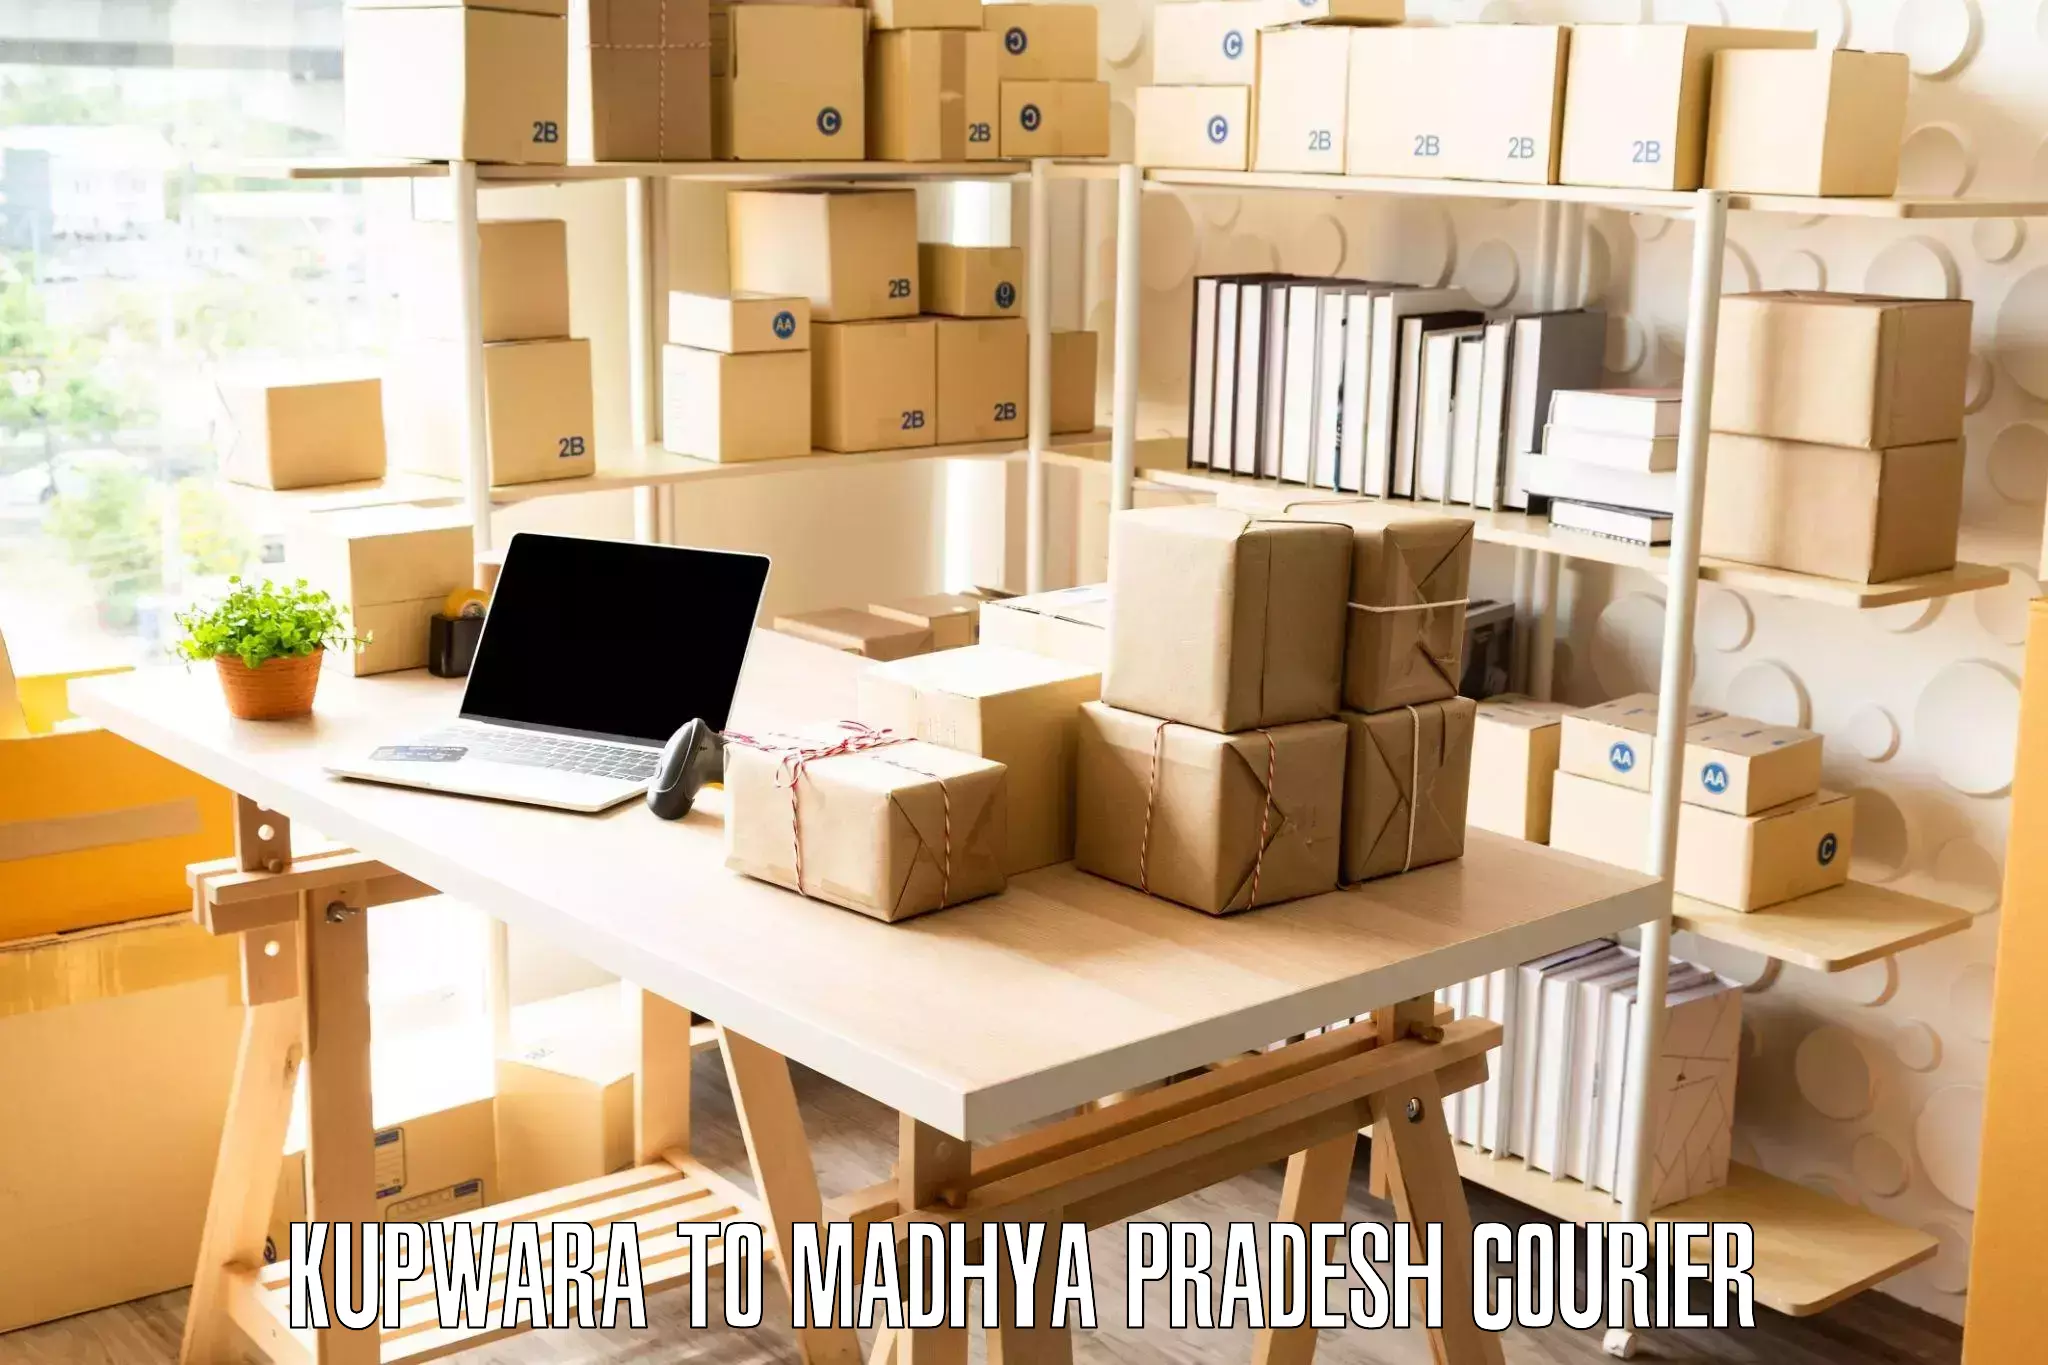 Moving and packing experts Kupwara to Sagar